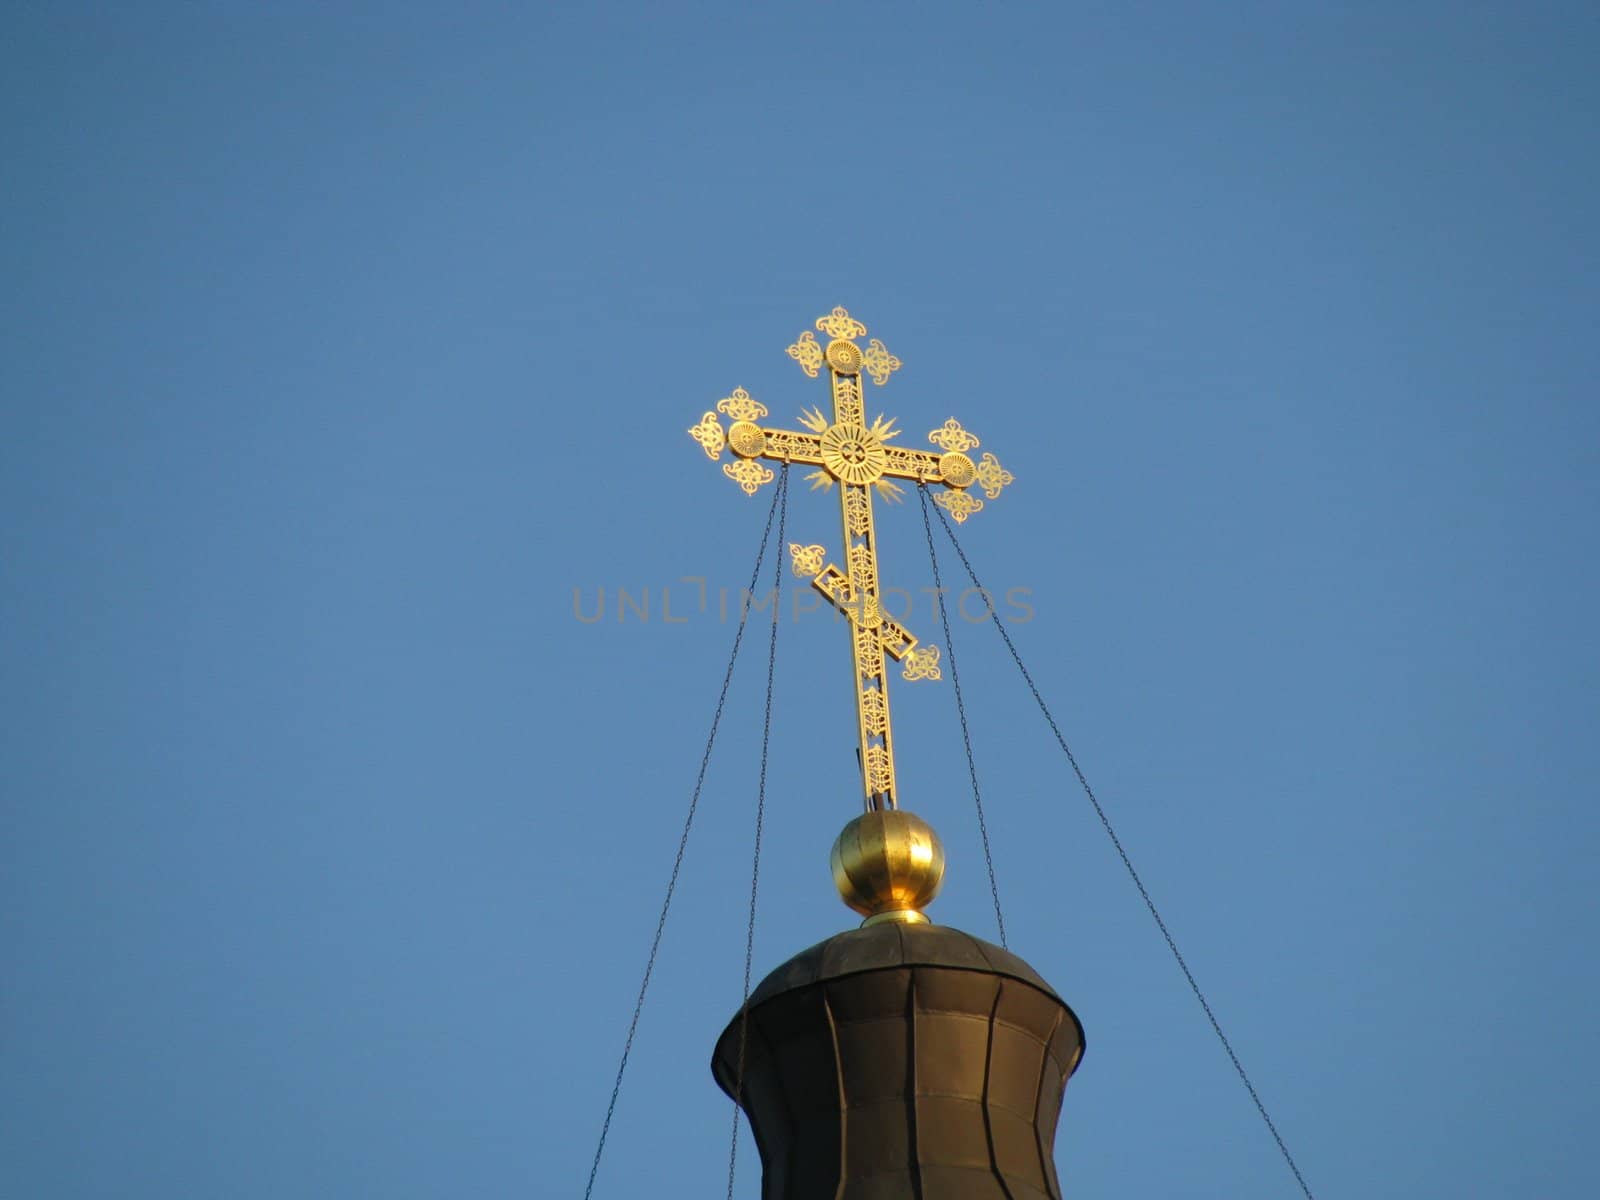 Cross, gold(en), blue sky, church; Christianity by Viktoha